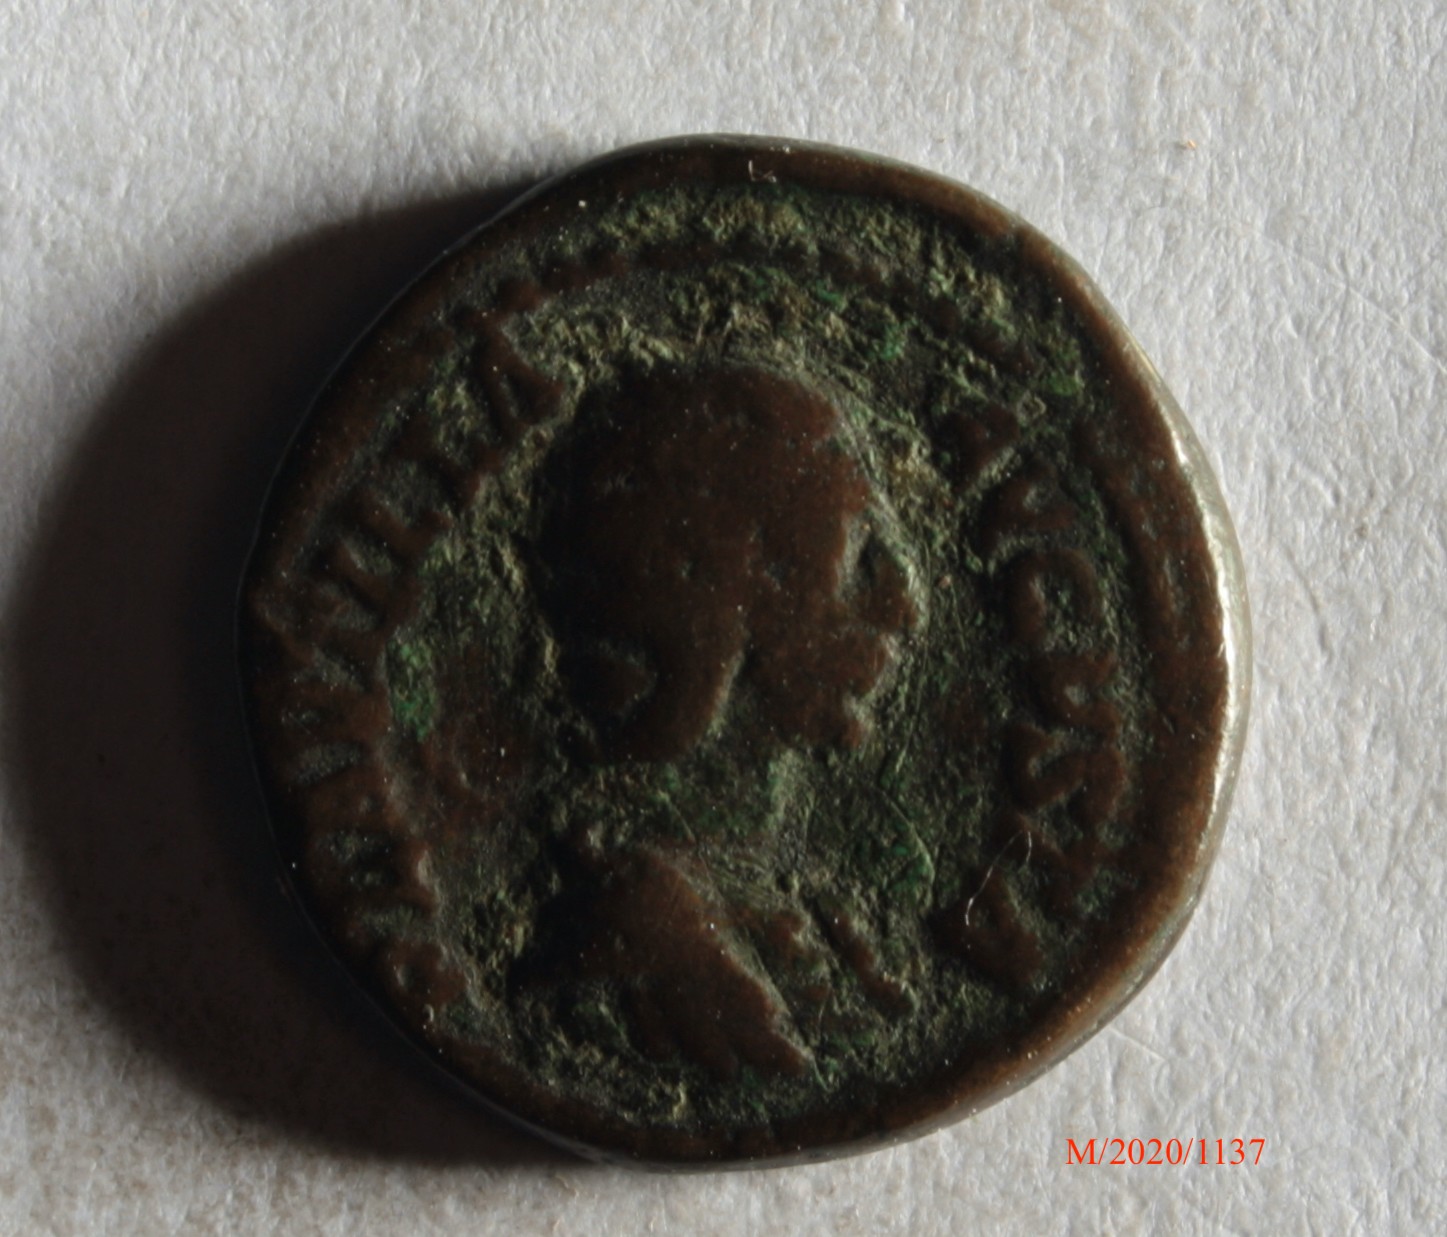 Römische Münze, Nominal Denar, Prägeherr unbekannt, Prägeort nicht bestimmbar, Fälschung (Museumsgesellschaft Bad Dürkheim e.V. CC BY-NC-SA)